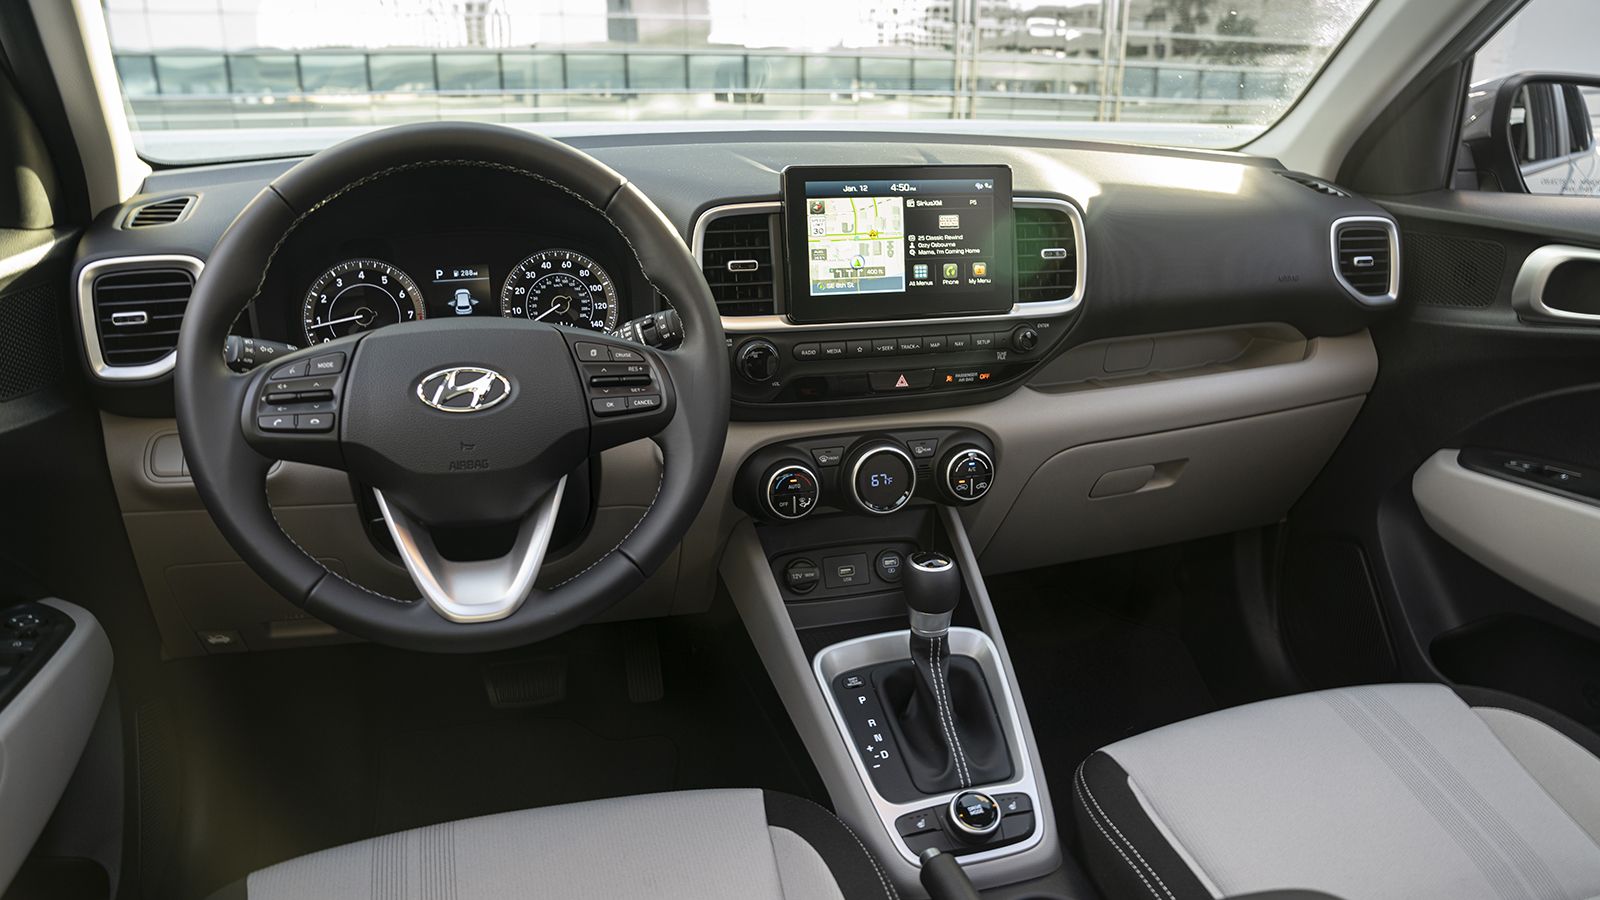 2020 Hyundai Venue: 5 Things to Know